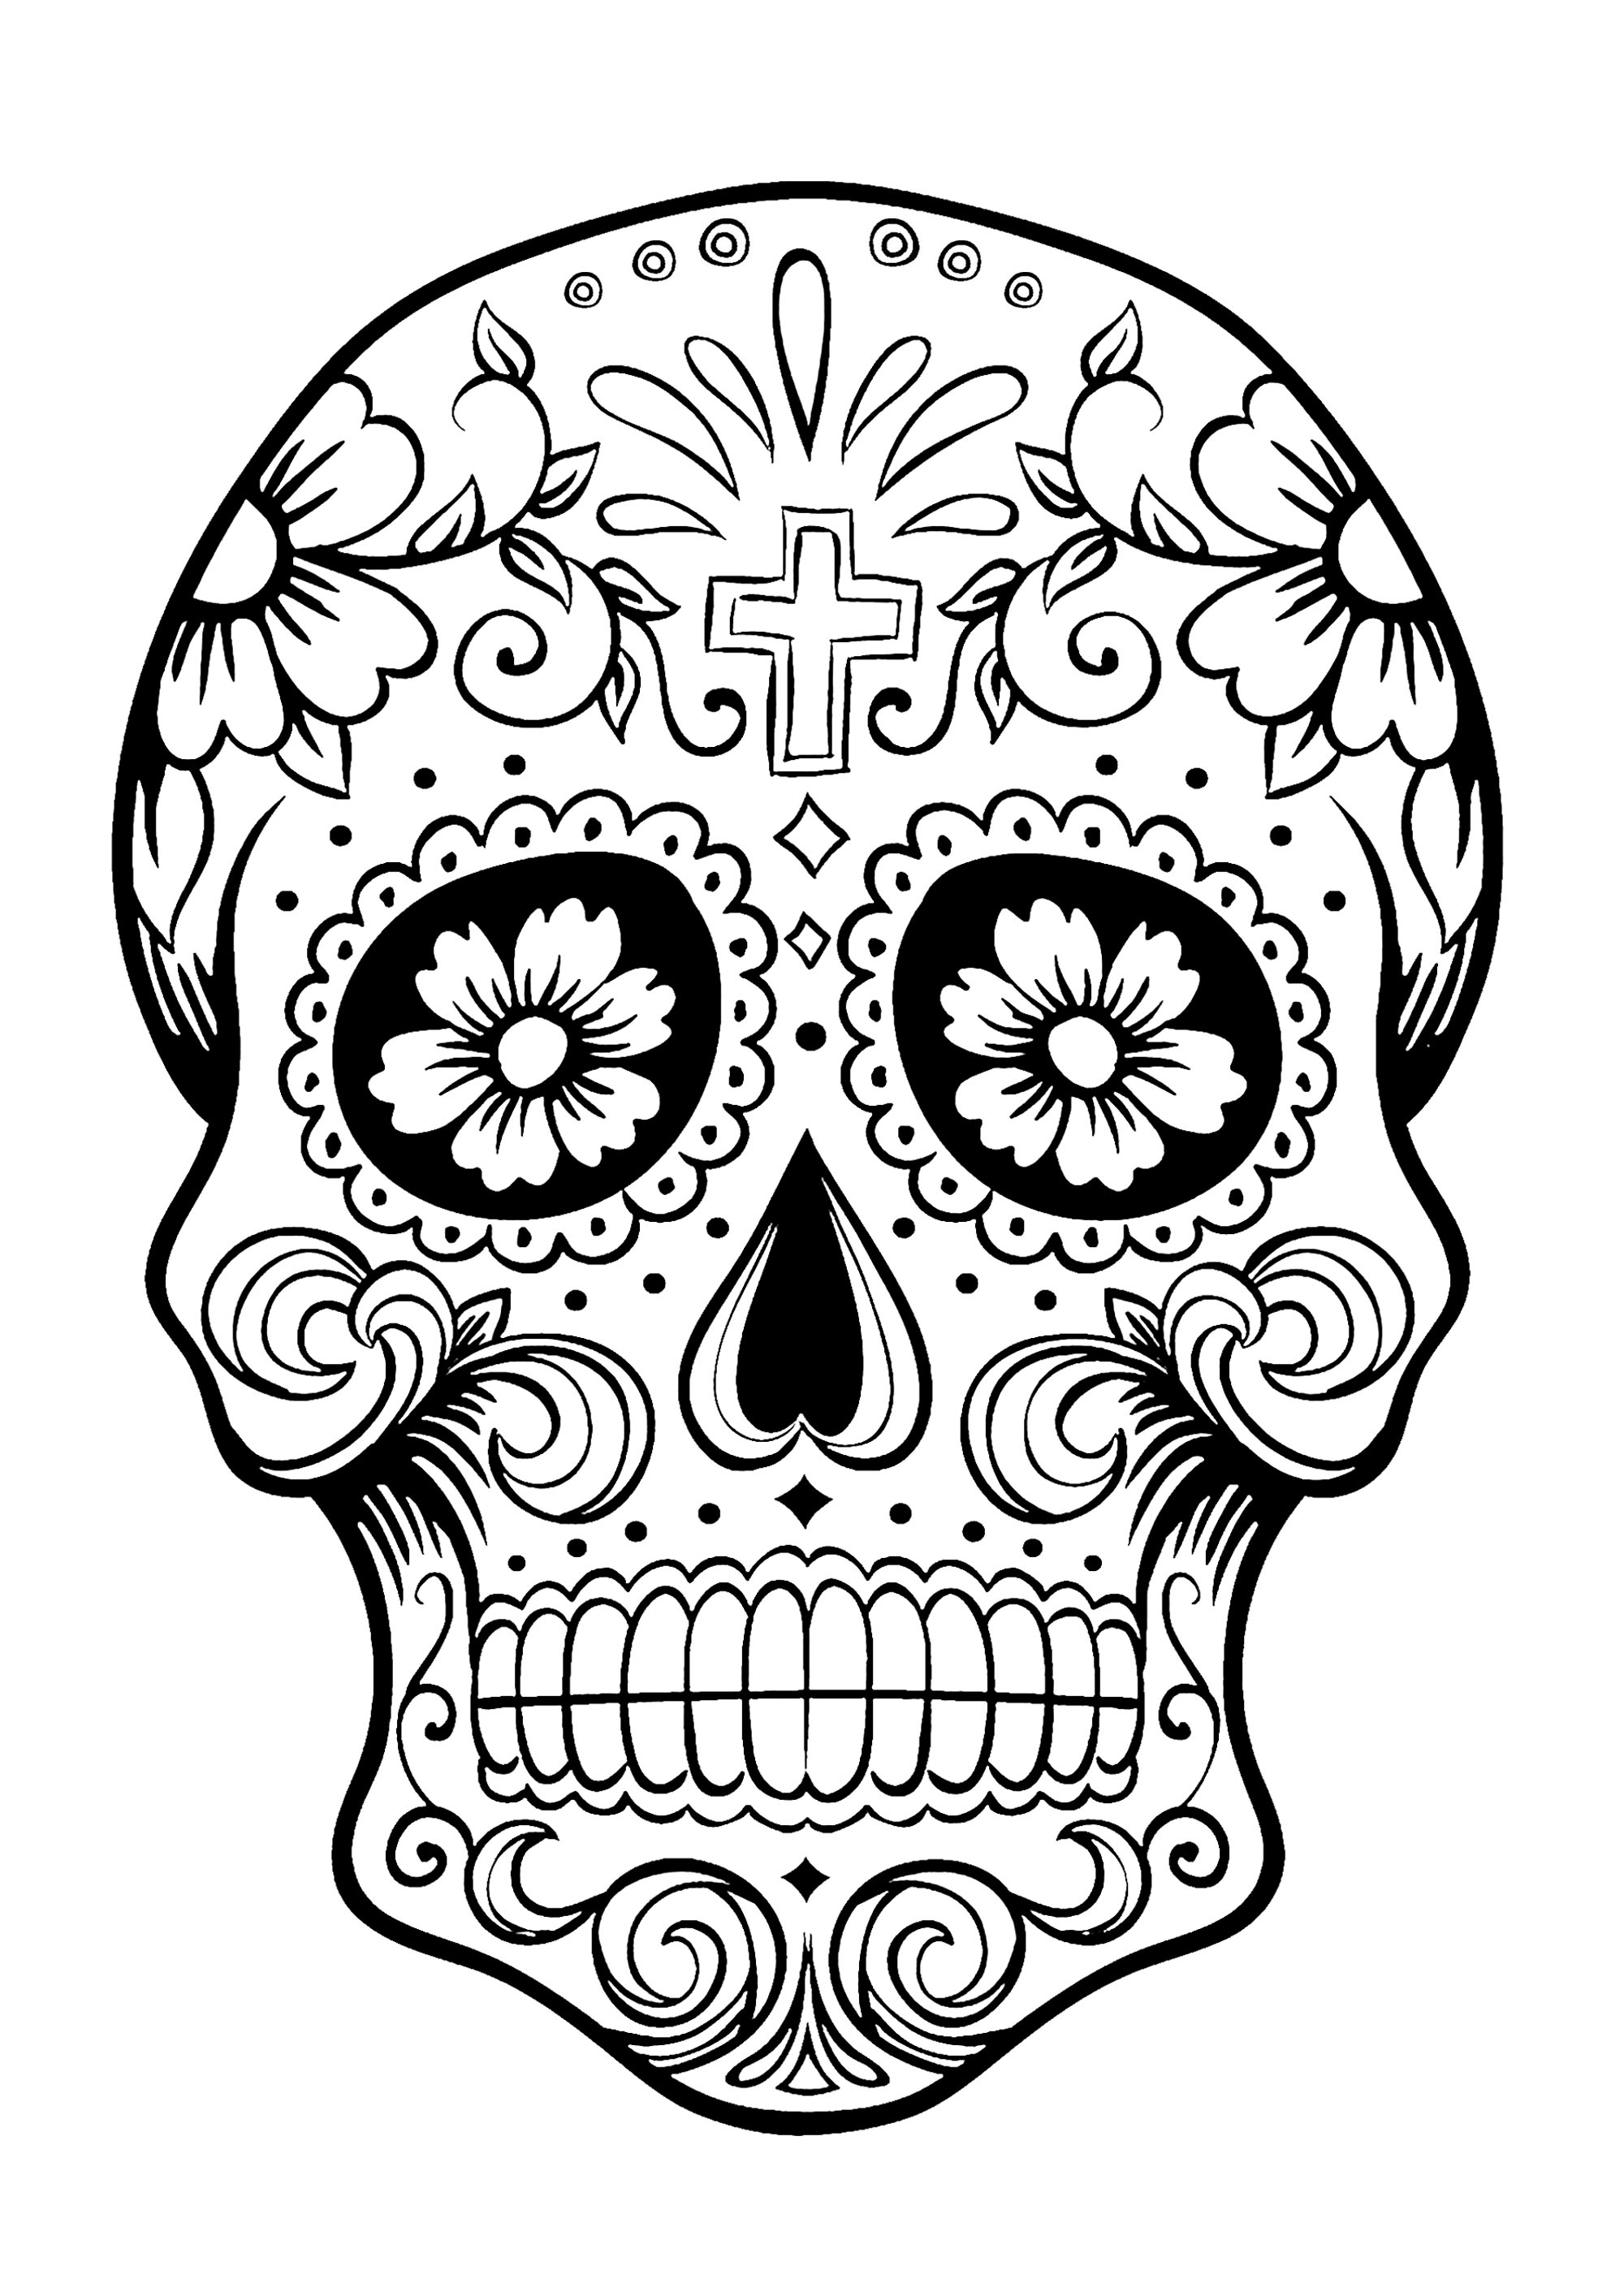 el dia de los muertos skull drawing